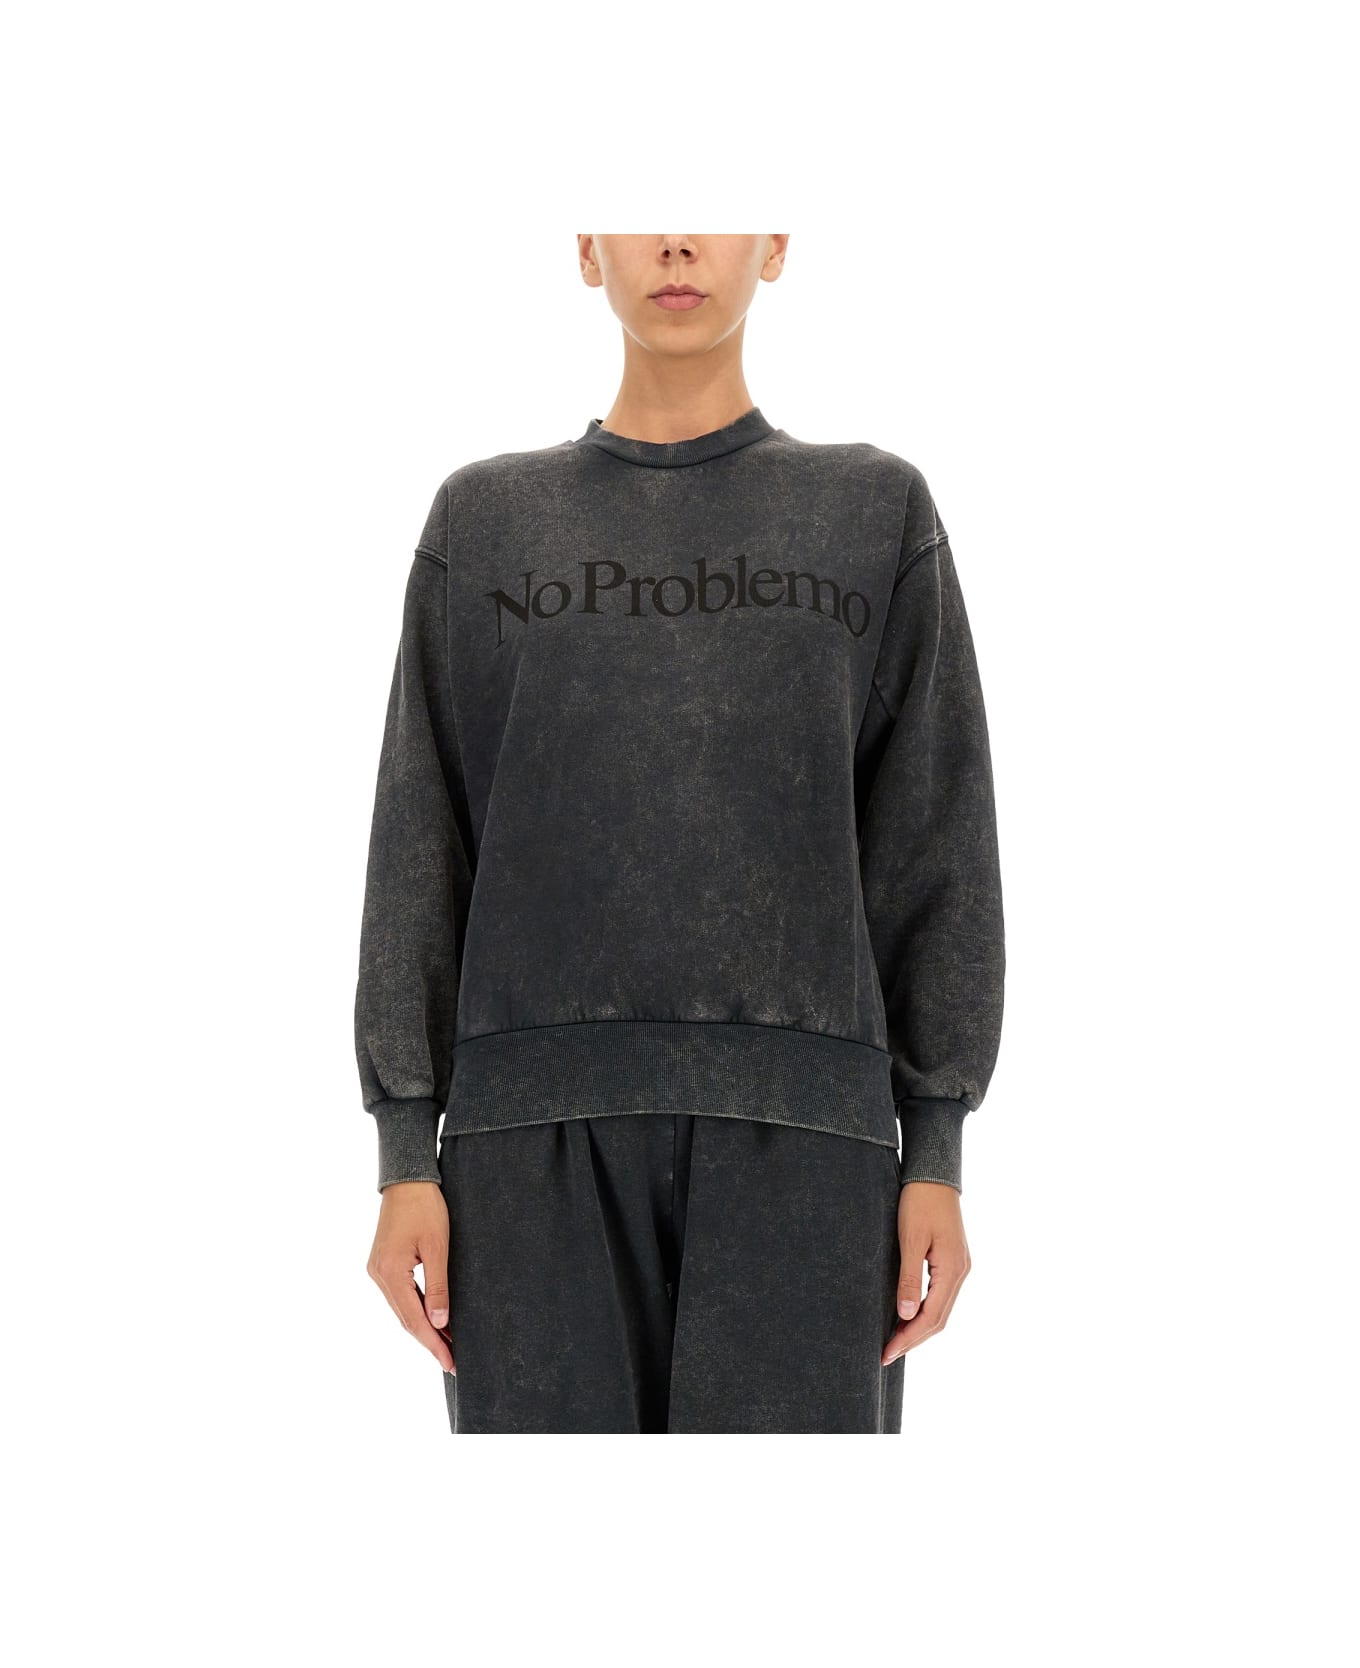 Aries "no Problemo" Print Sweatshirt - BLACK フリース